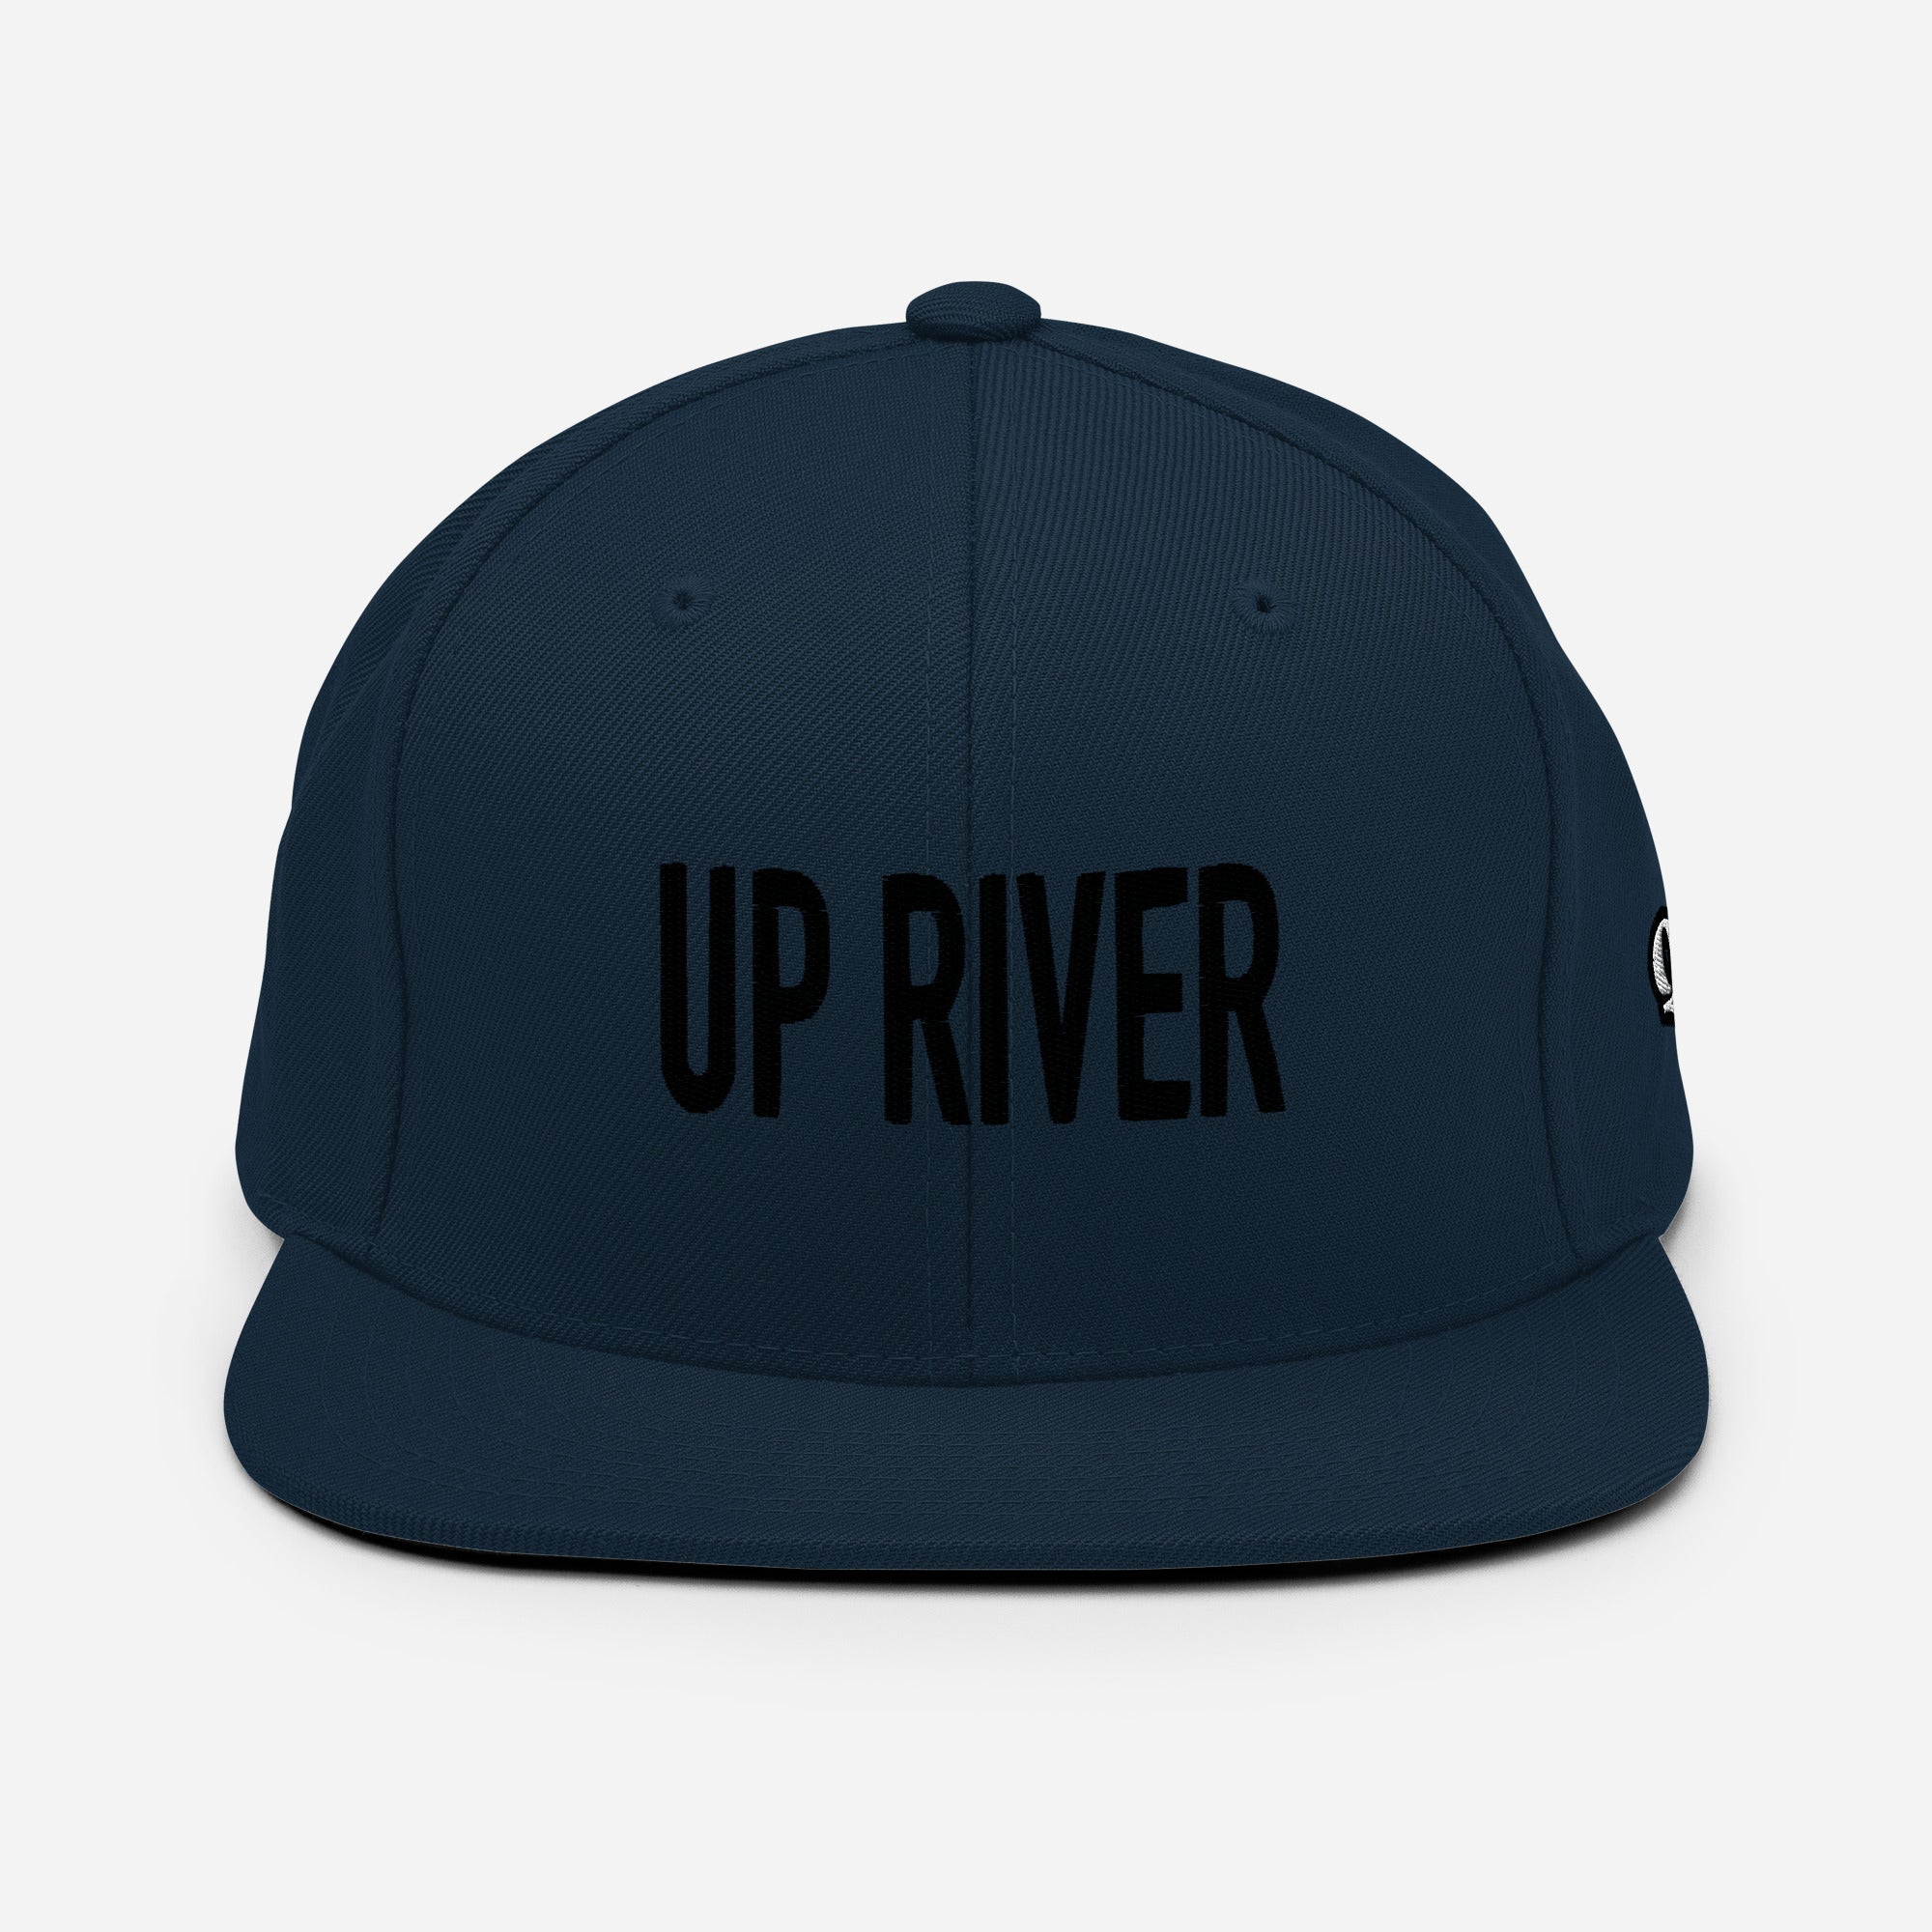 Up River Snapback Hat